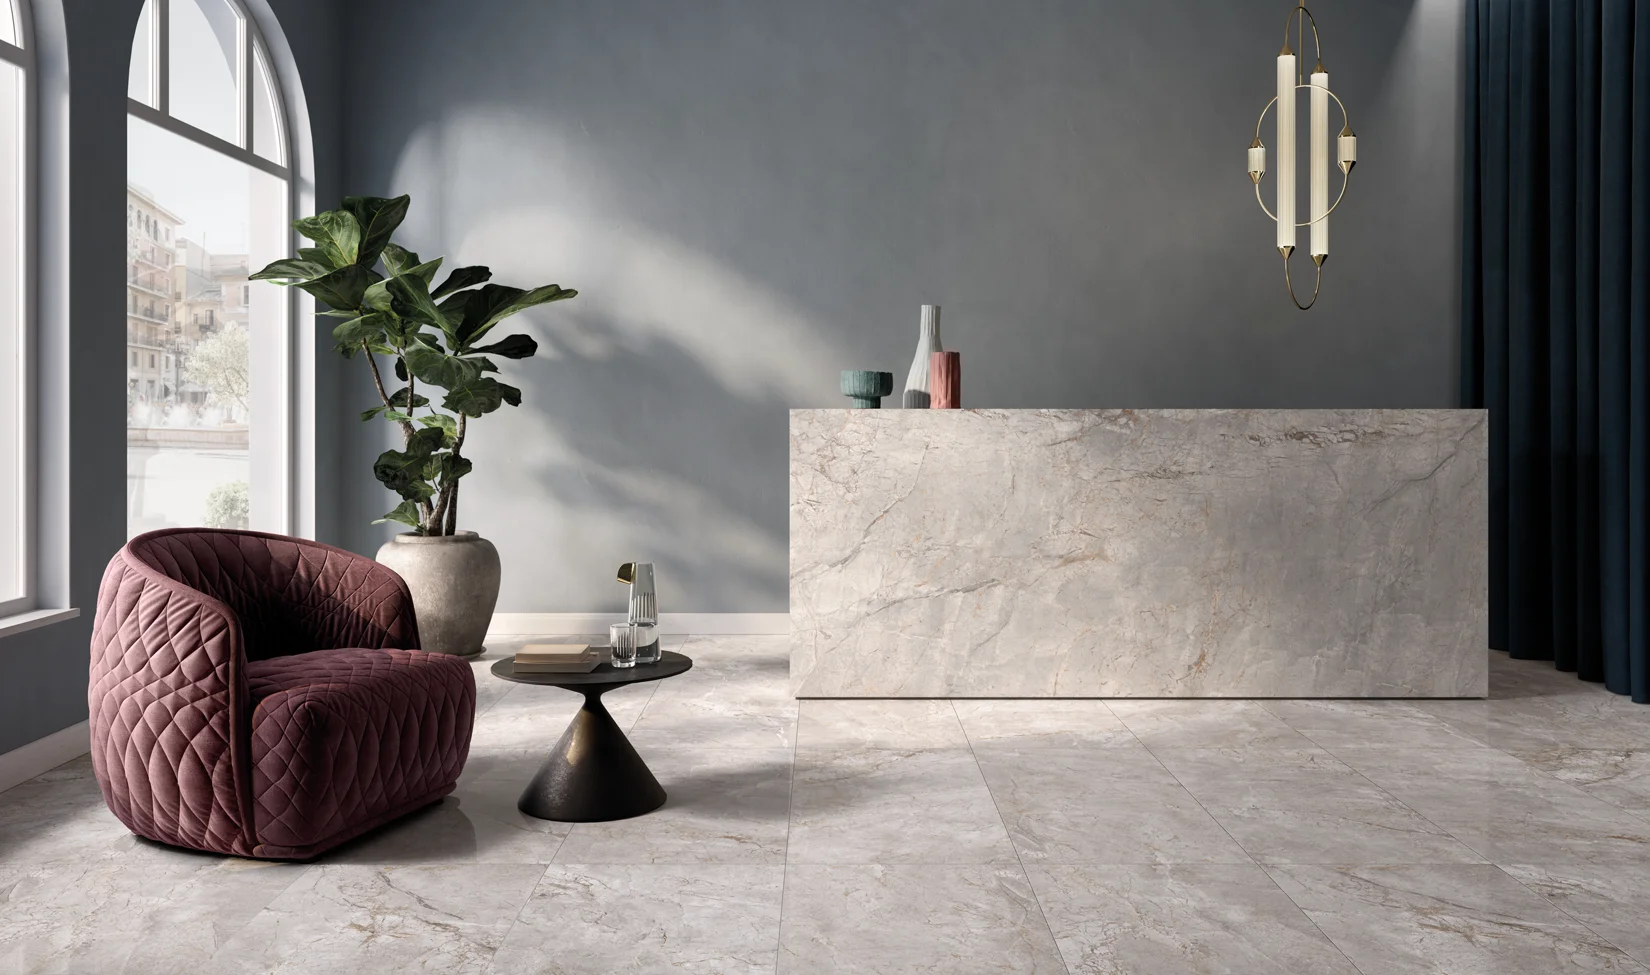 Piastrelle in gres porcellanato effetto marmo grigio in ambiente interno con mobili di design e grande finestra.